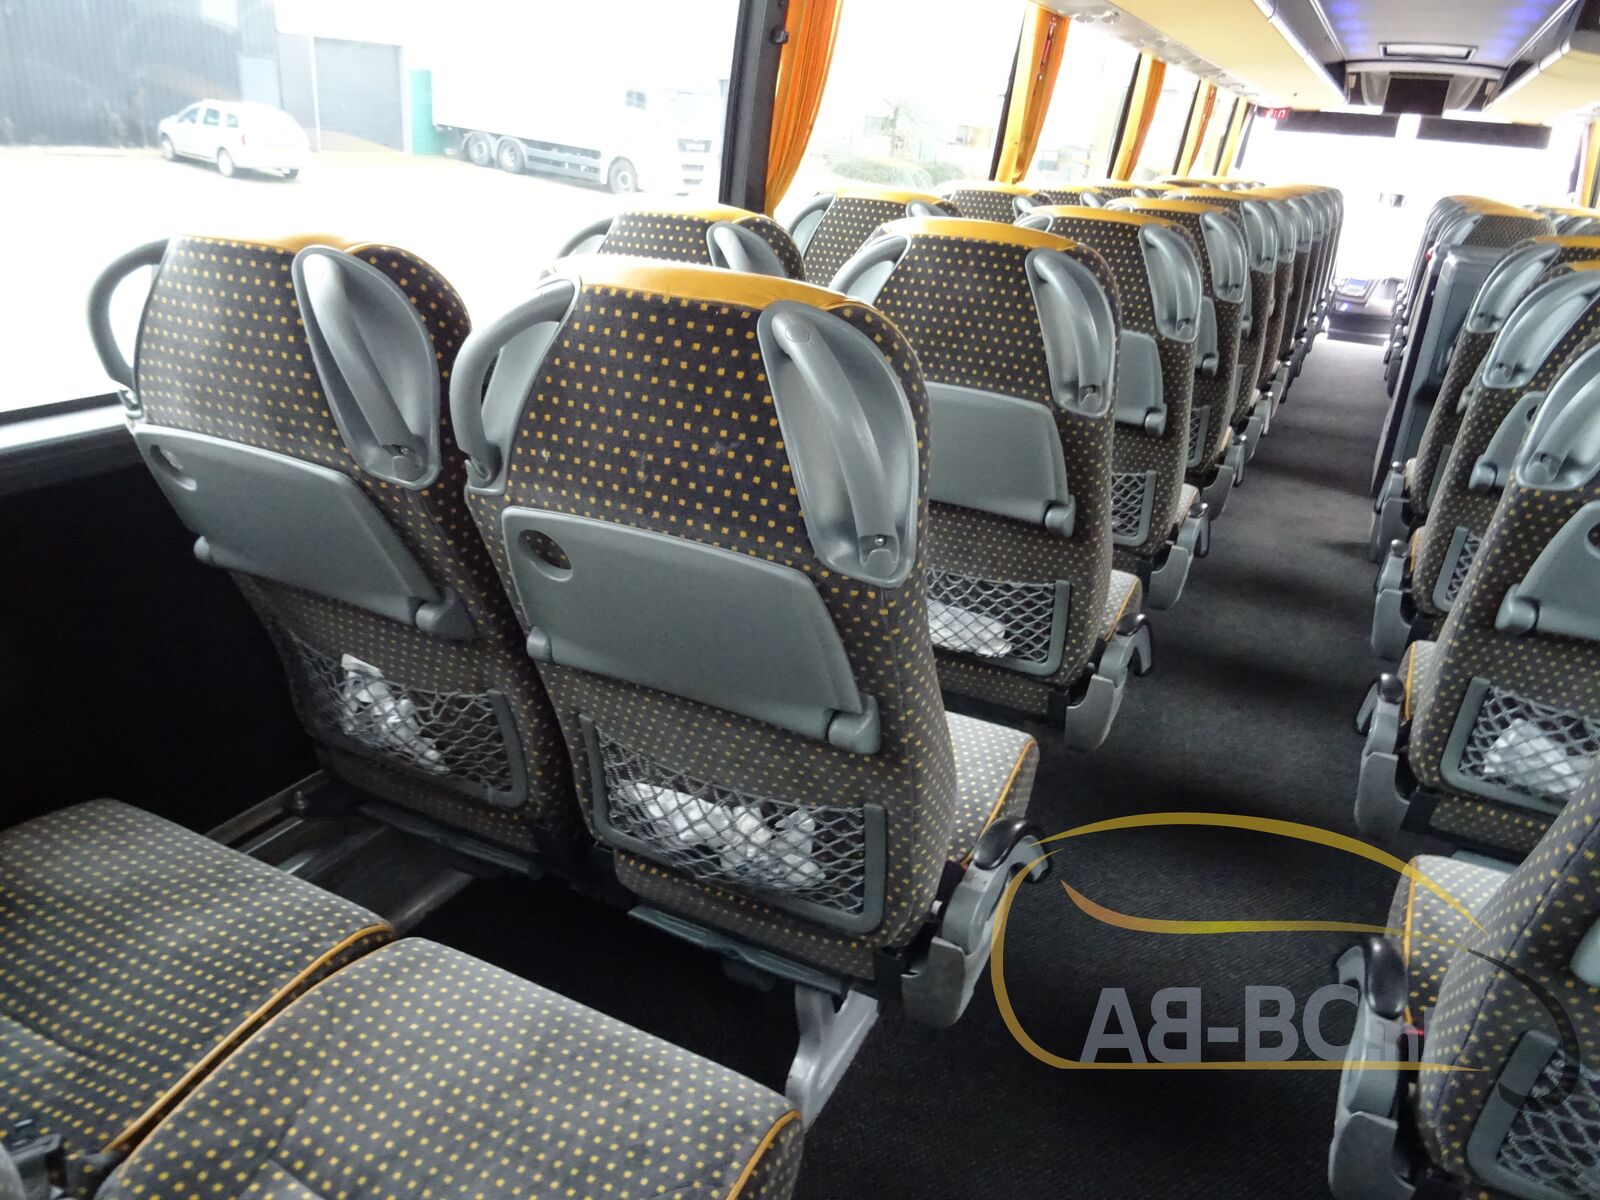 coach-bus-VDL-BOVA-Magiq-54-Seats-EURO-5---1642160502124285200_orig_0fb2bad3459b4043a977b858925ba67e--22011413334676017500